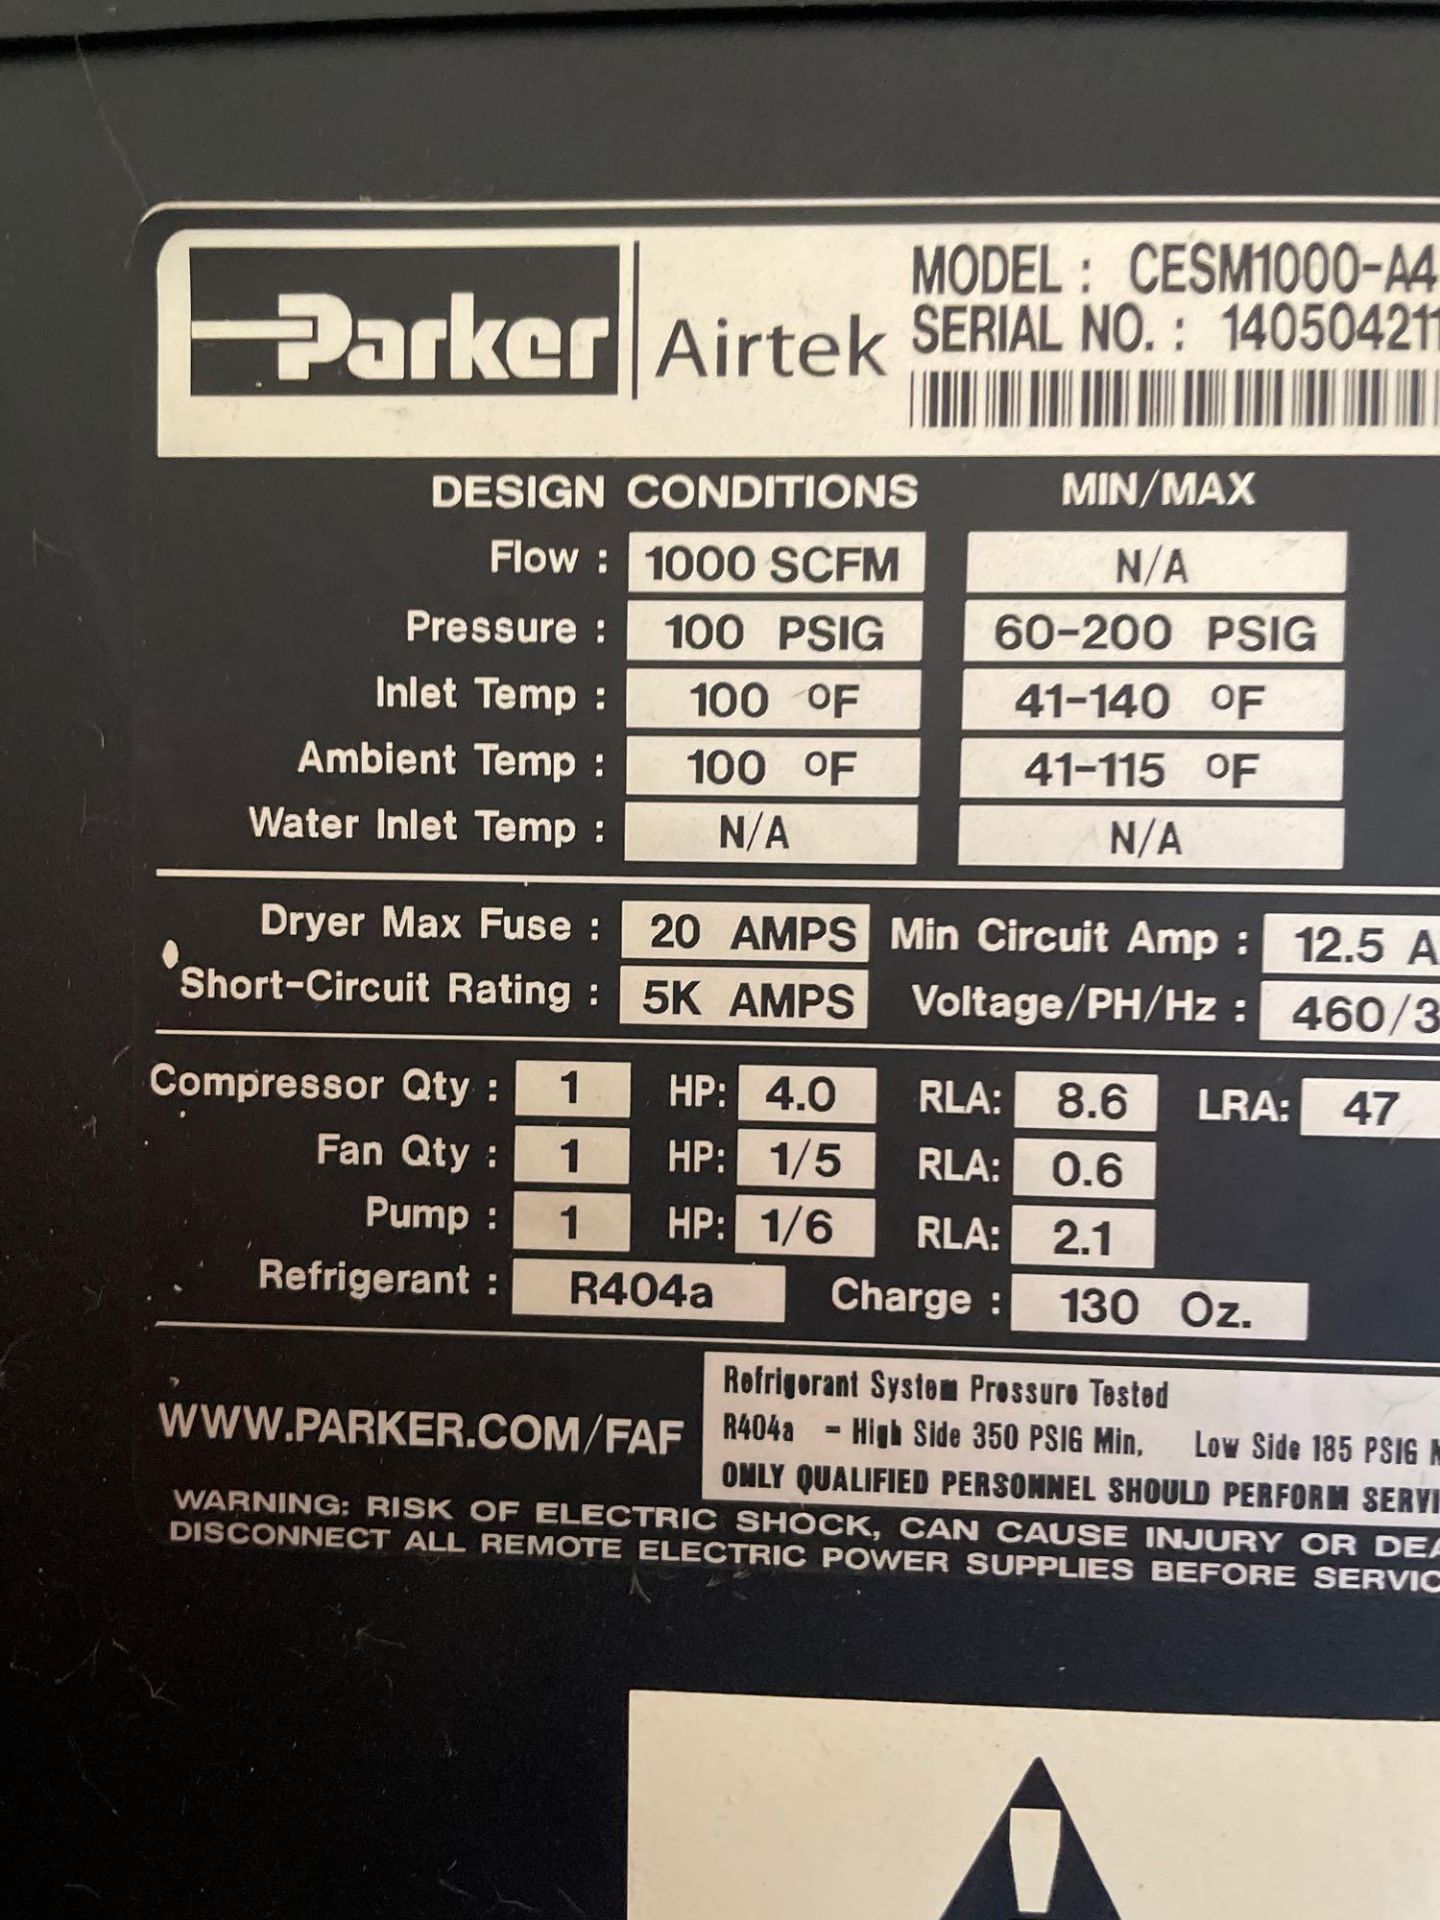 Parker Airtek Dryer - Image 4 of 4